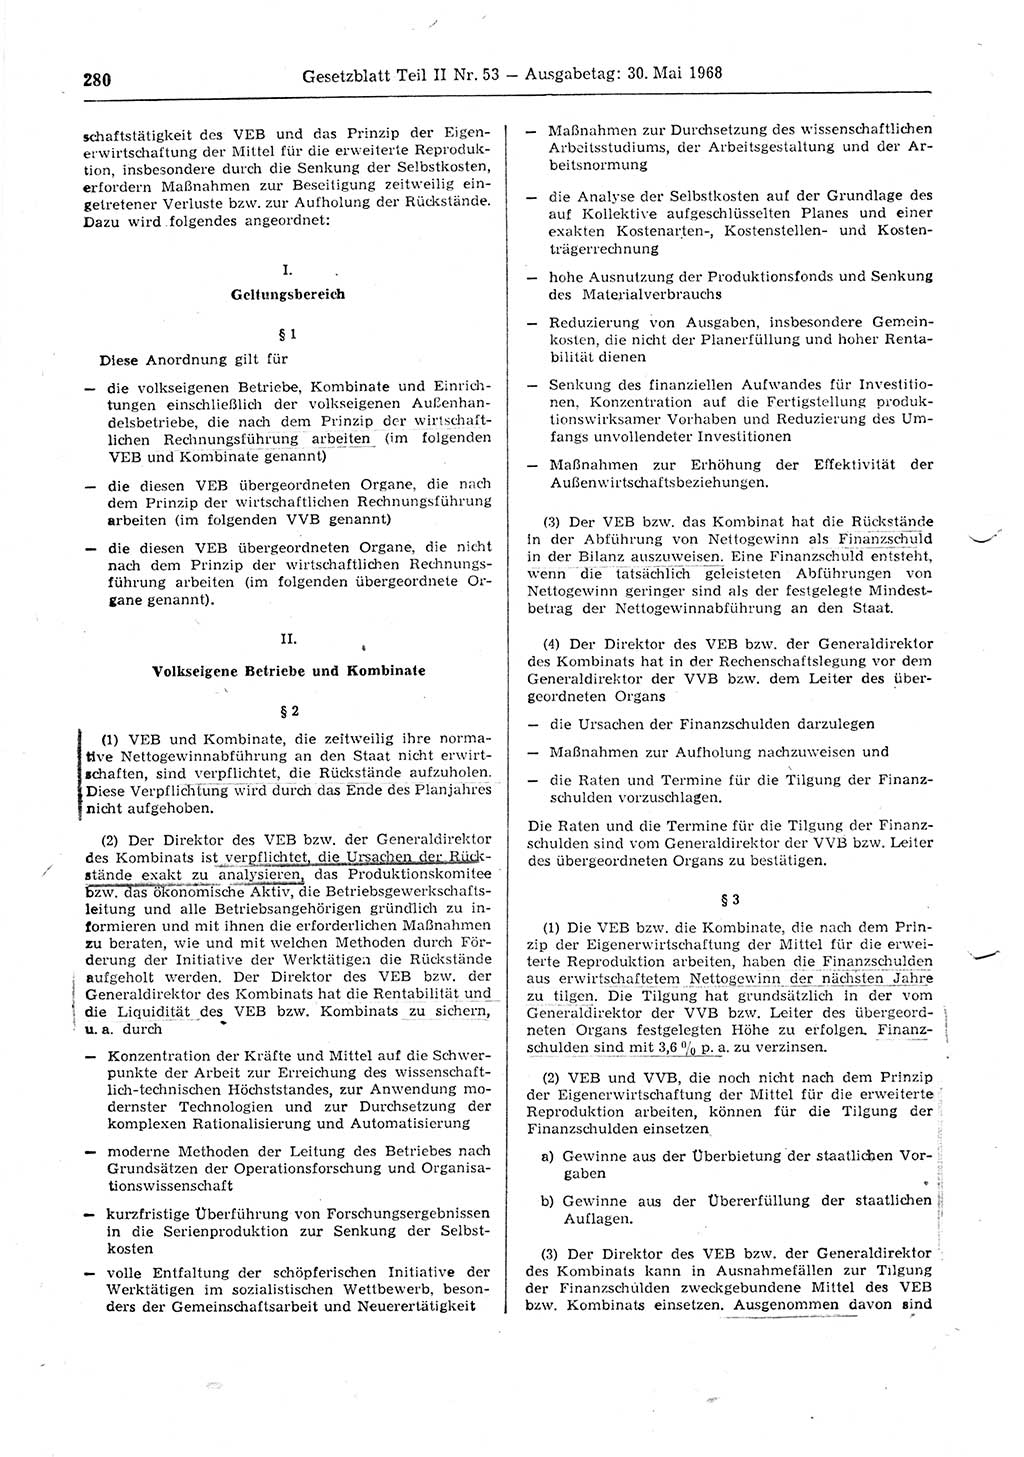 Gesetzblatt (GBl.) der Deutschen Demokratischen Republik (DDR) Teil ⅠⅠ 1968, Seite 280 (GBl. DDR ⅠⅠ 1968, S. 280)